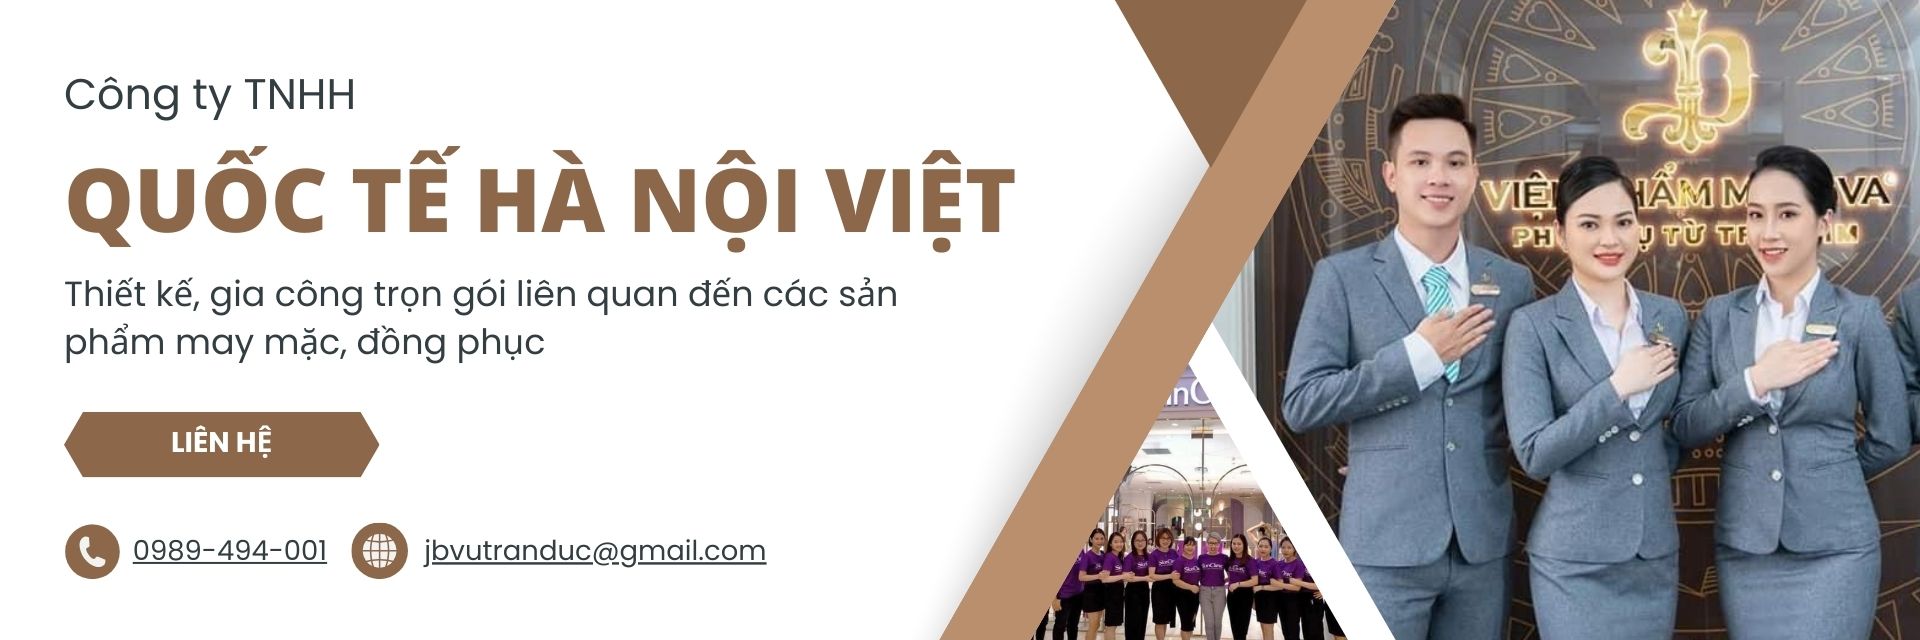 Công ty TNHH Quốc Tế Hà Nội Việt